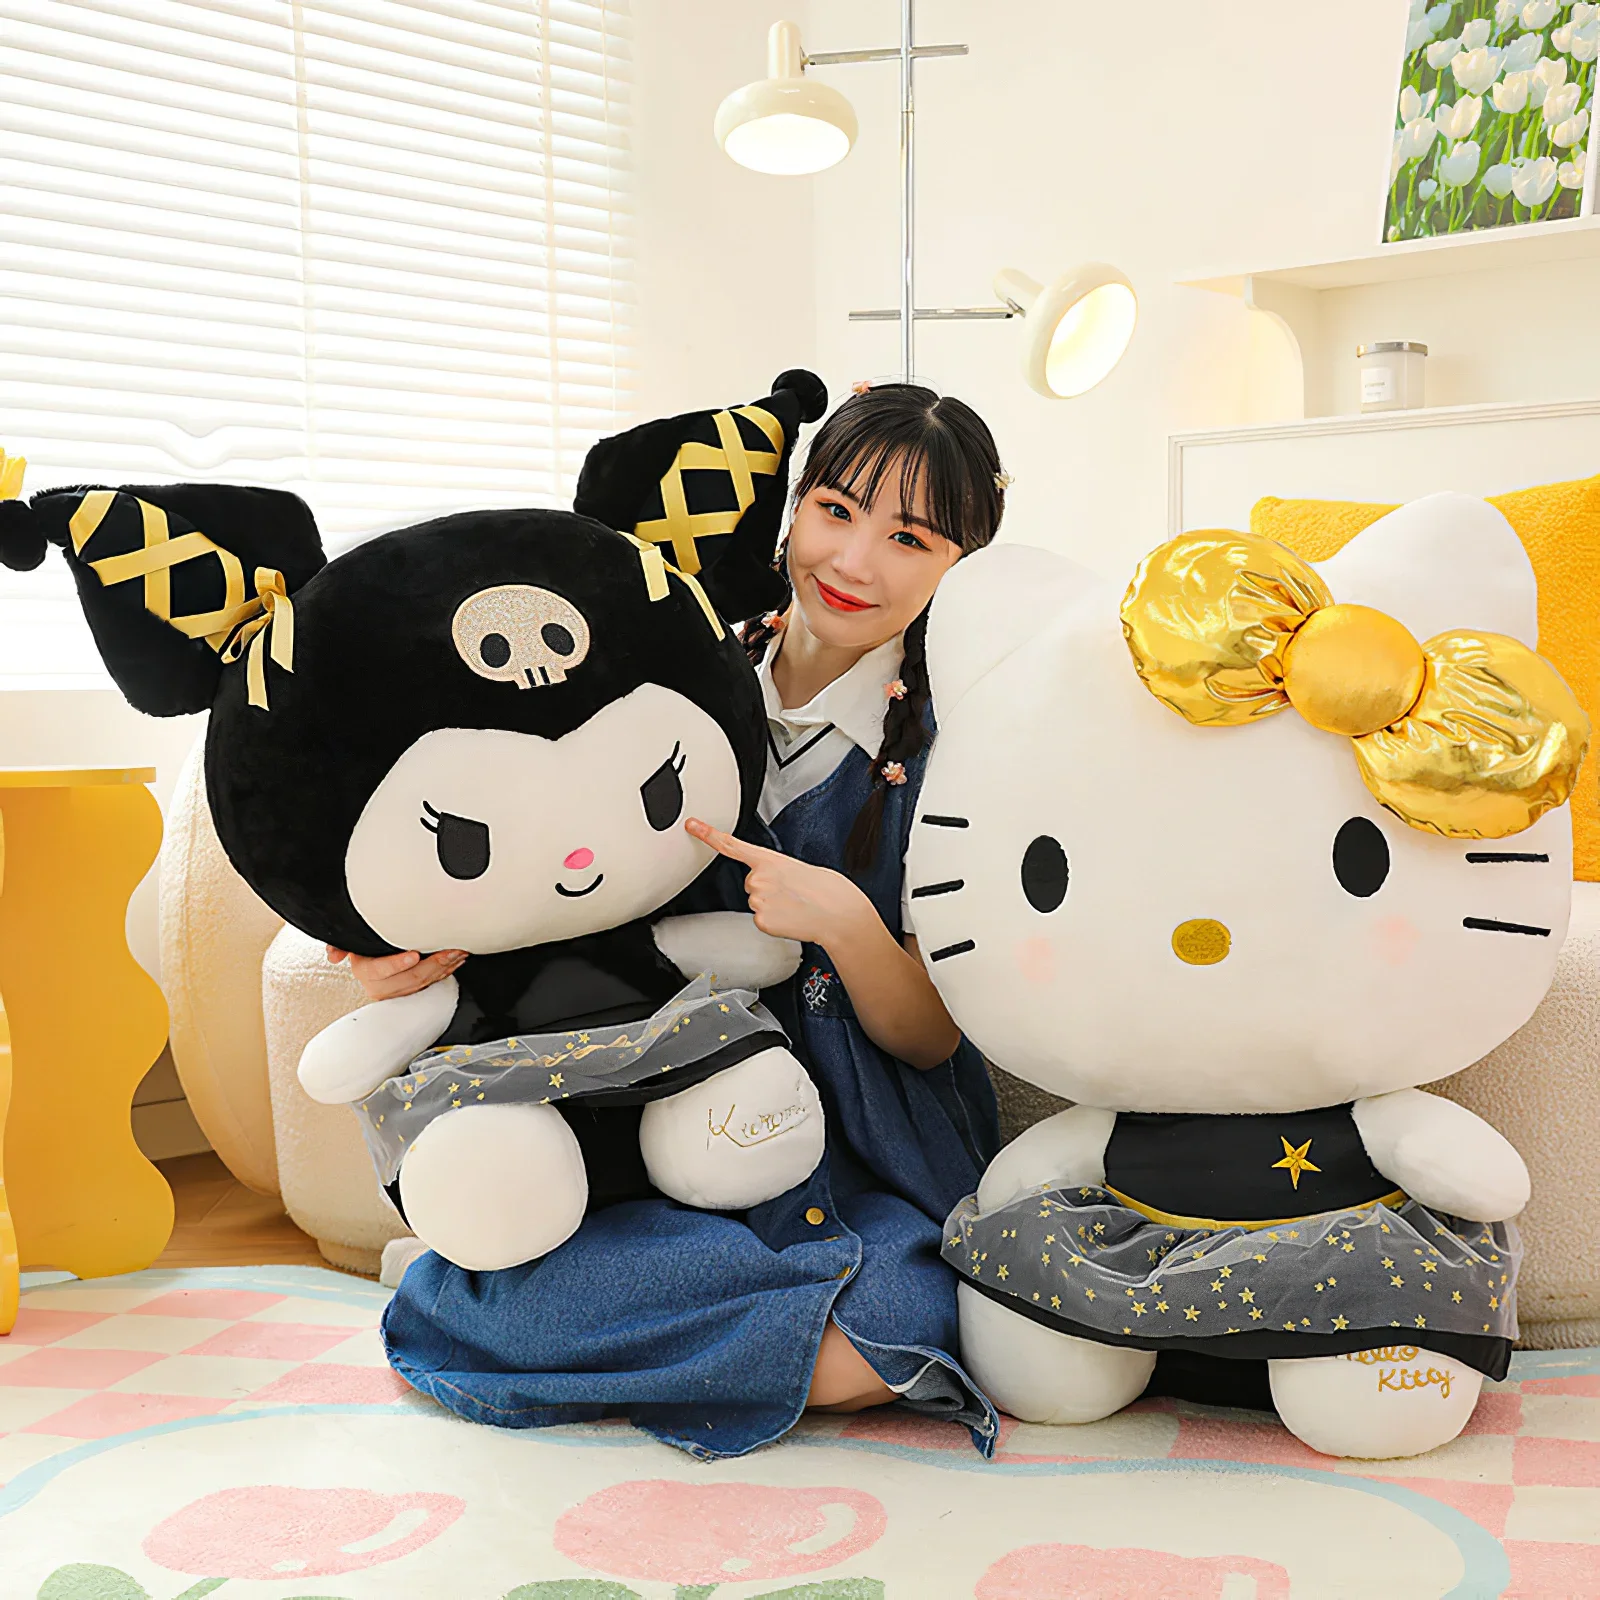 Sanrio Plush Hello Kitty Kuromi Plush Toy Pillow Soft Stuffed